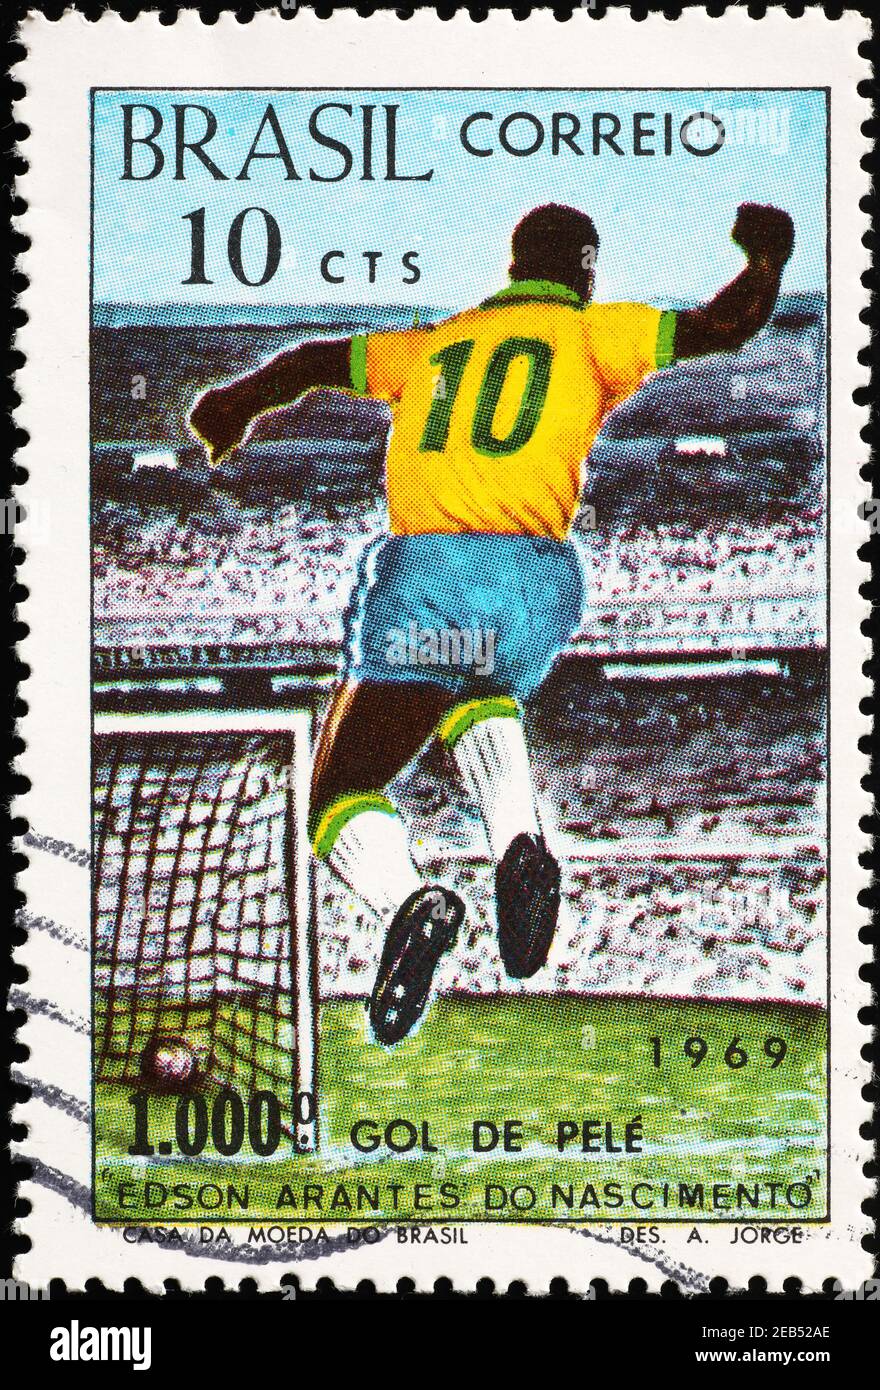 Celebration of thousandth goal by Pelé on brazilian sta Stock Photo